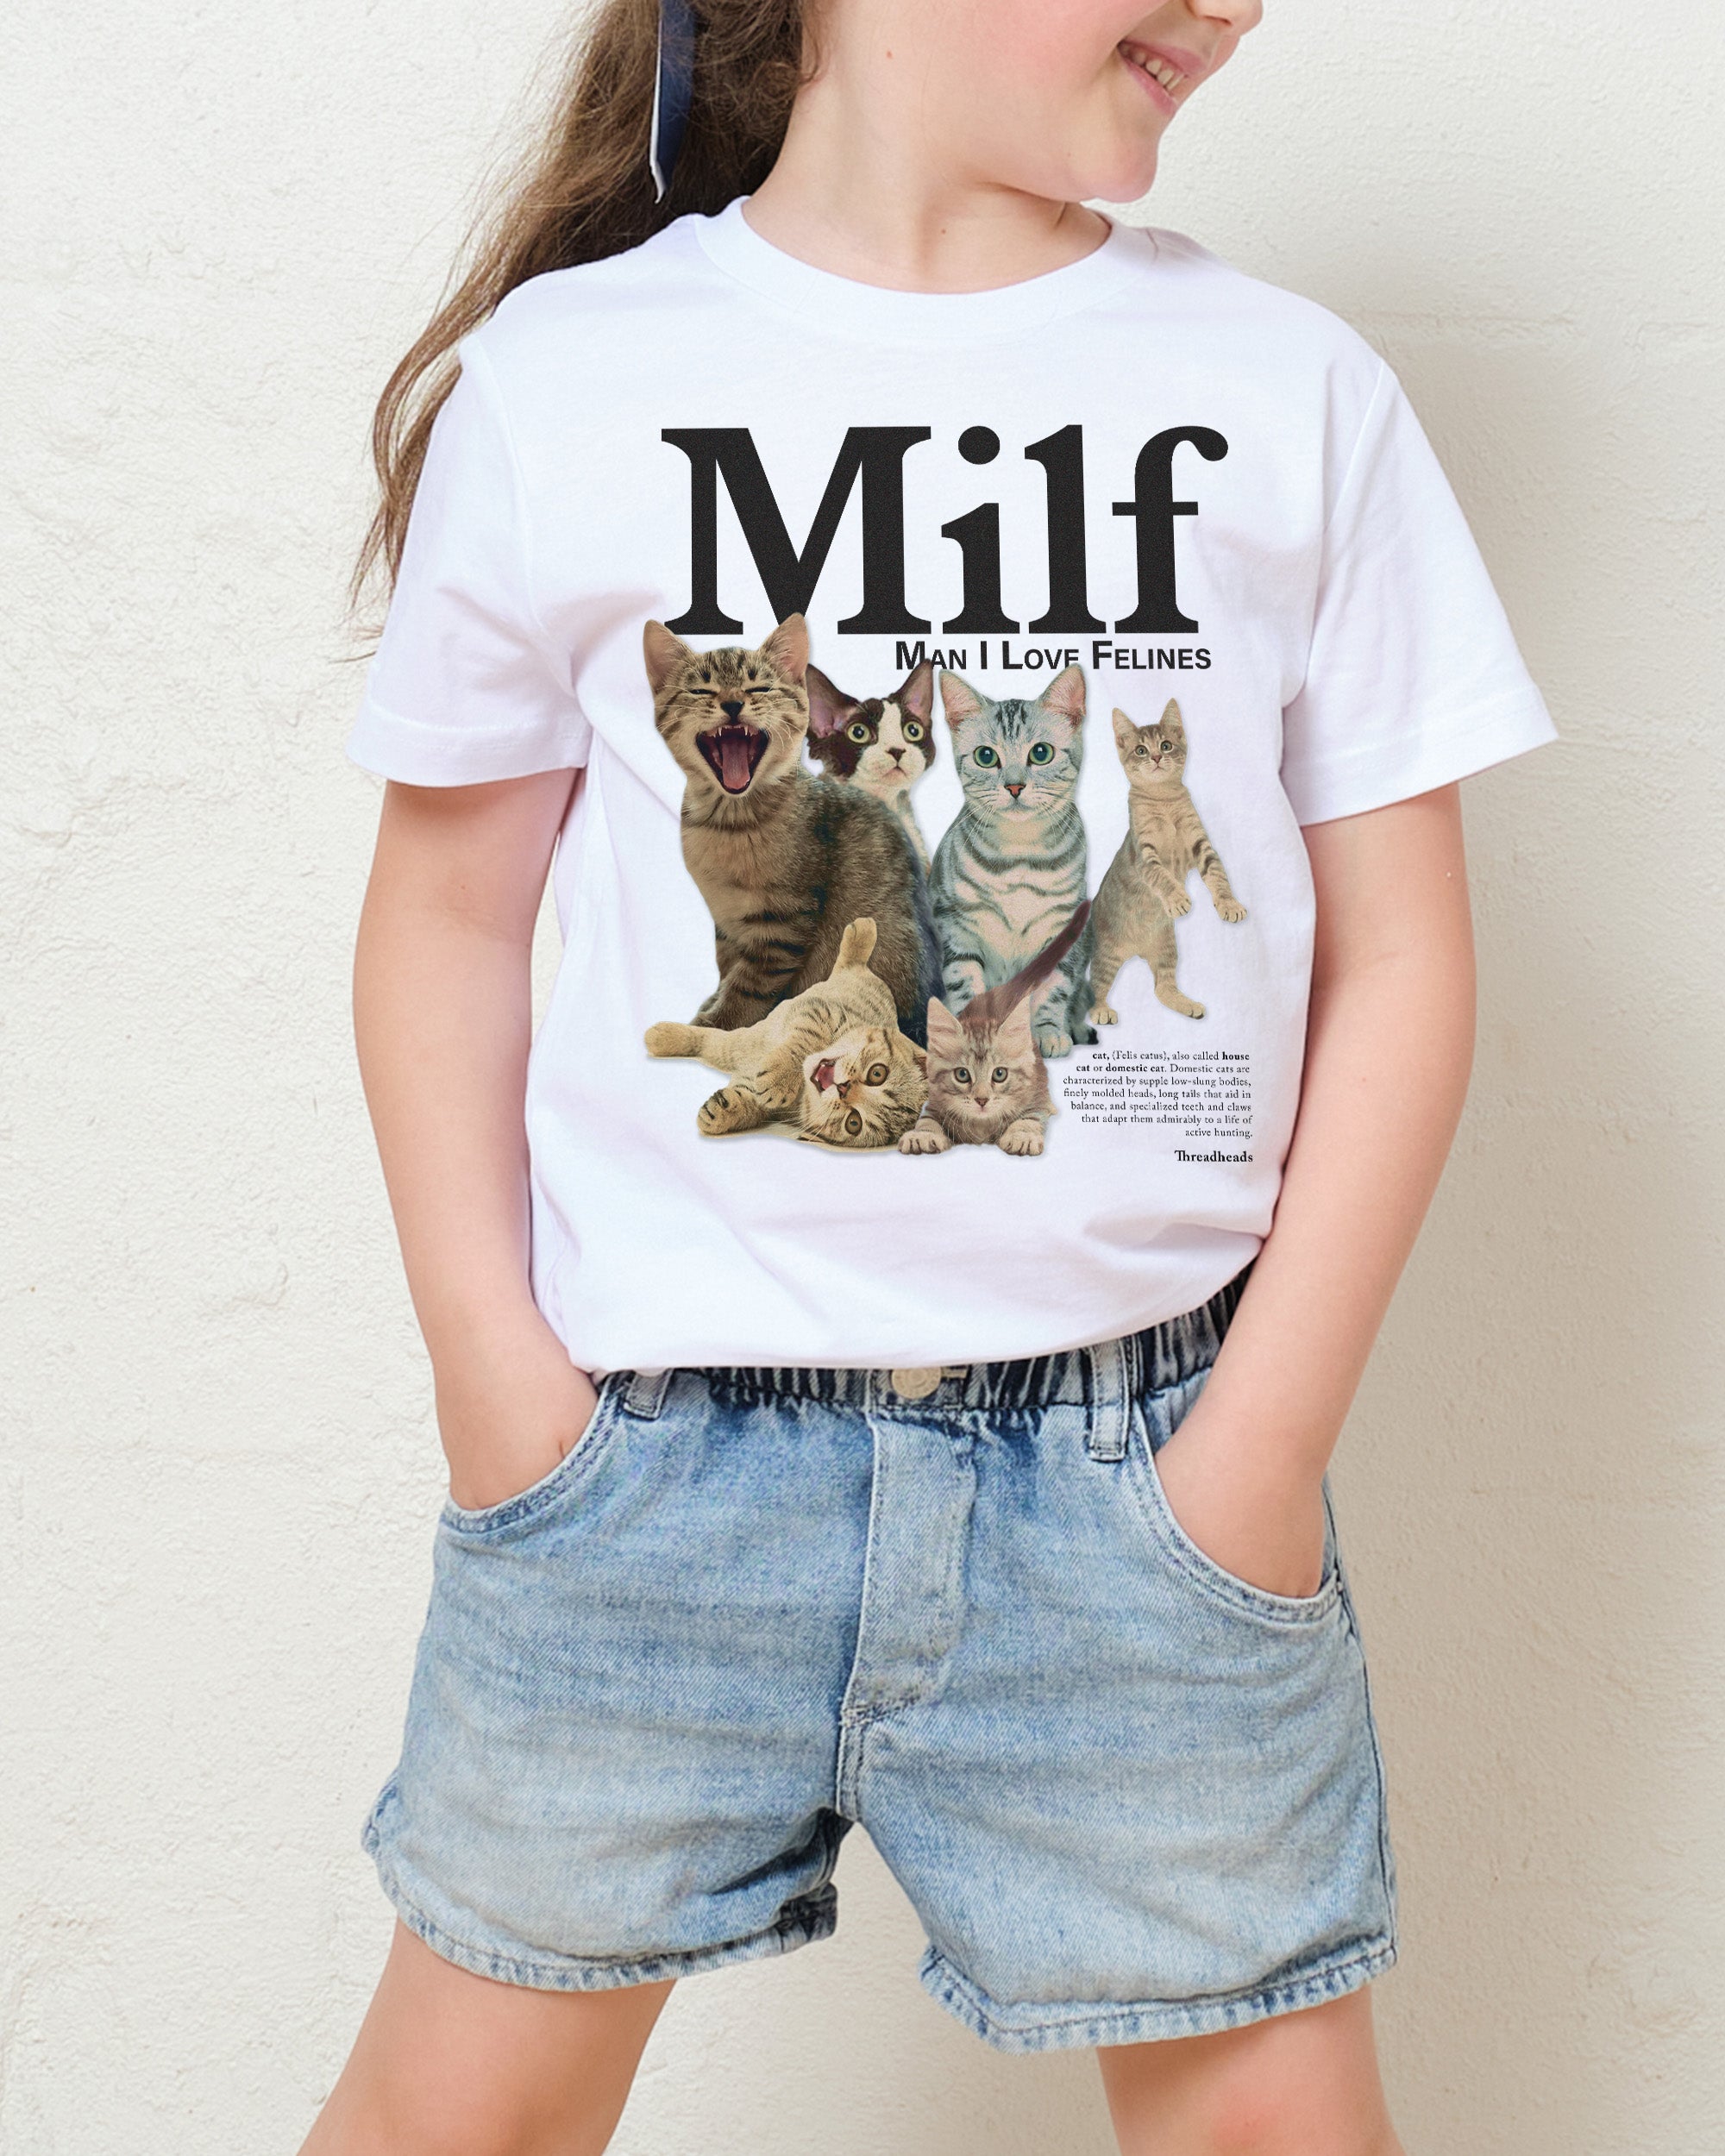 Man I Love Felines Kids T-Shirt Australia Online White